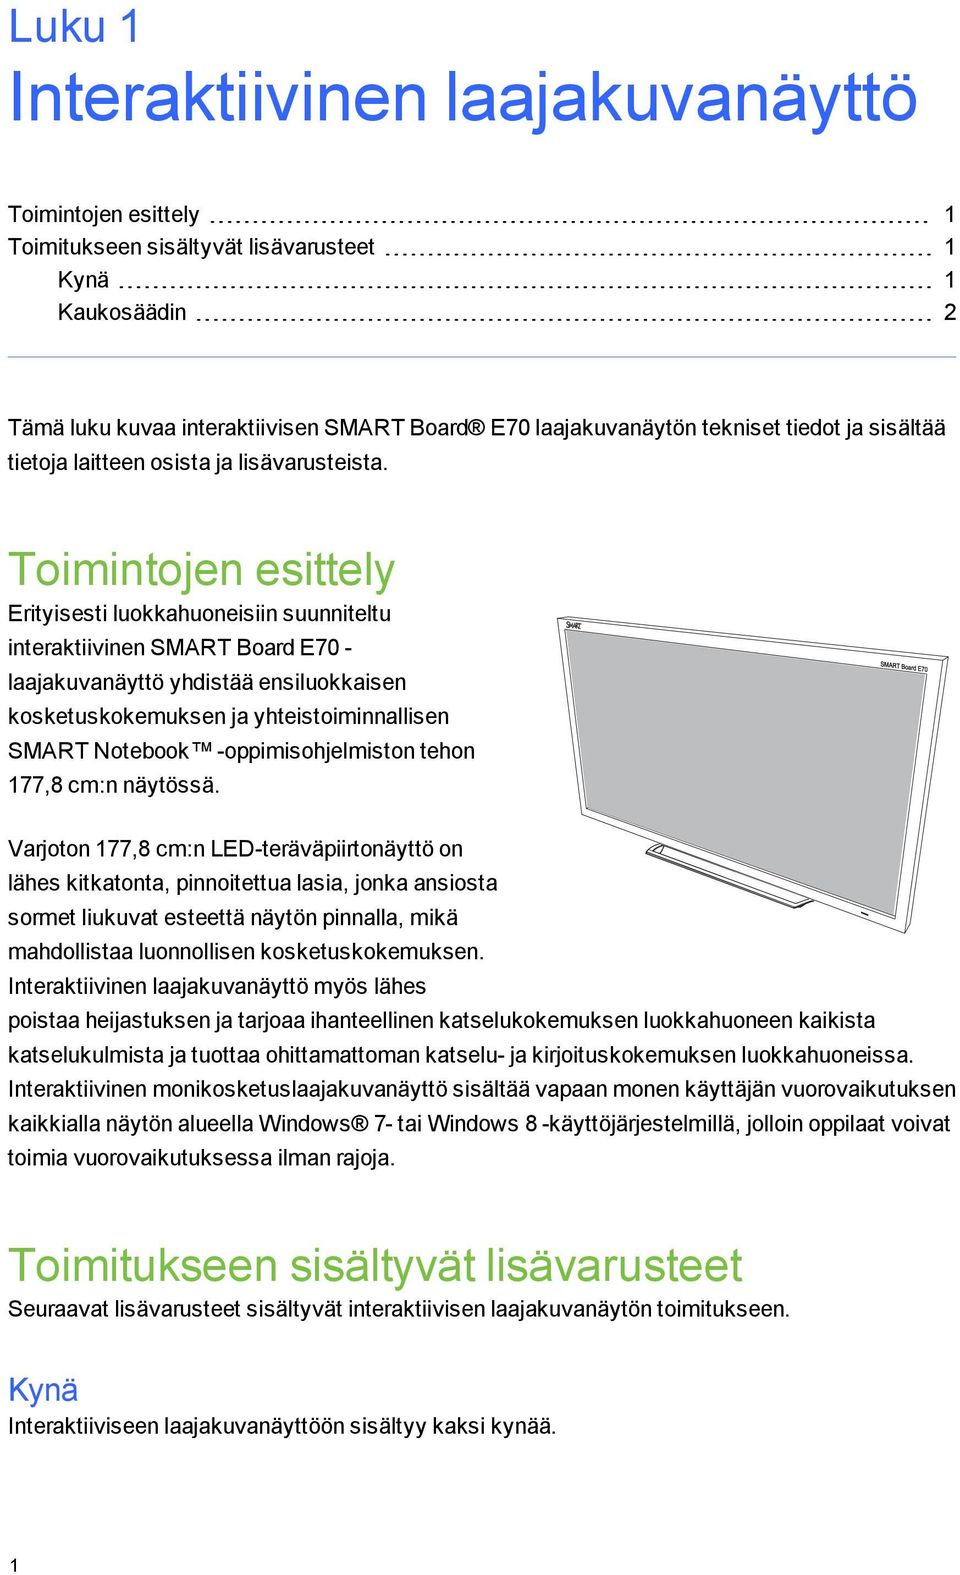 Toimintojen esittely Erityisesti luokkahuoneisiin suunniteltu interaktiivinen SMART Board E70 - laajakuvanäyttö yhdistää ensiluokkaisen kosketuskokemuksen ja yhteistoiminnallisen SMART Notebook